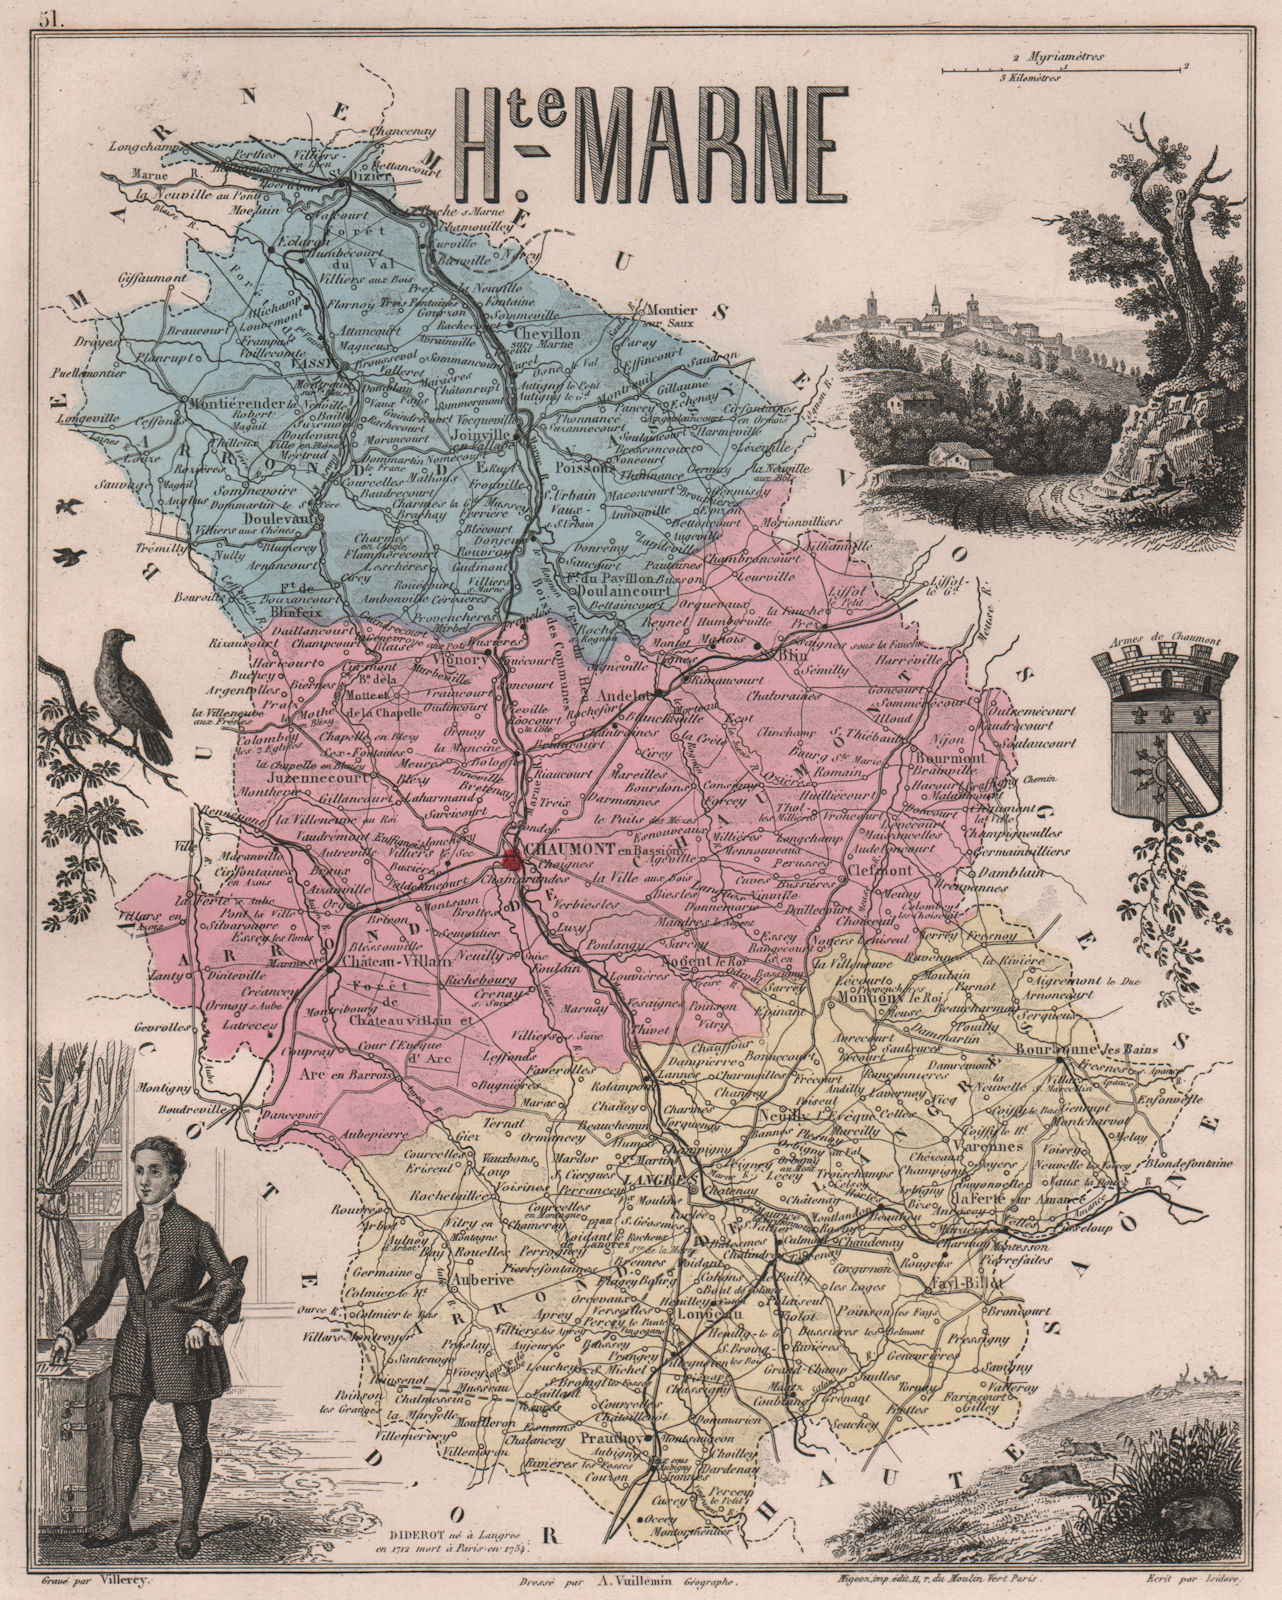 Associate Product HAUTE-MARNE. Département. Chaumont. Diderot. VUILLEMIN 1879 old antique map